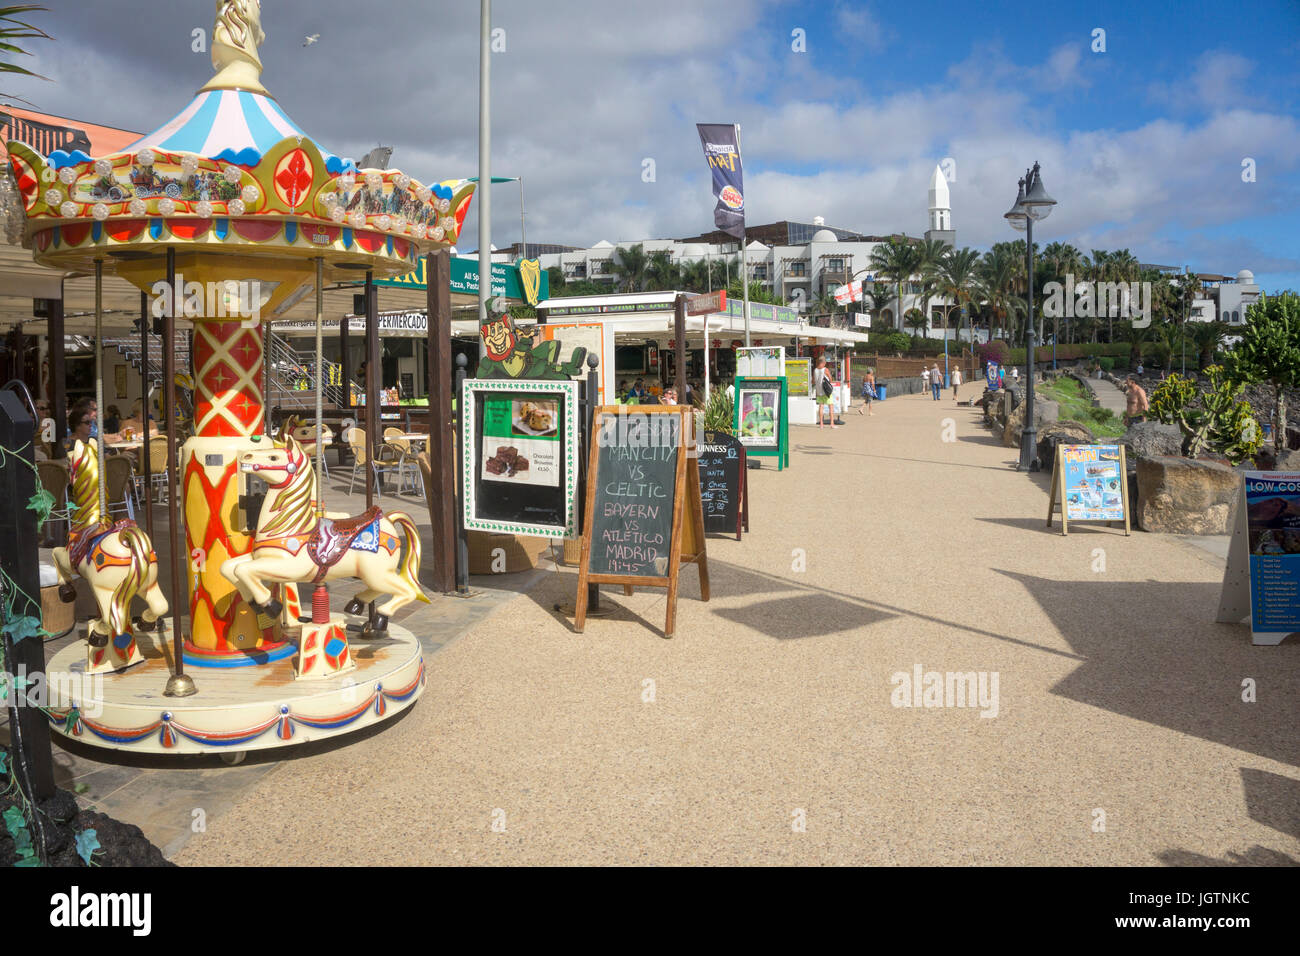 Les enfants merry-go-round et de boutiques à la promenade, la plage de Playa Dorada, Playa Blanca, Lanzarote, îles Canaries, Espagne, Europe Banque D'Images